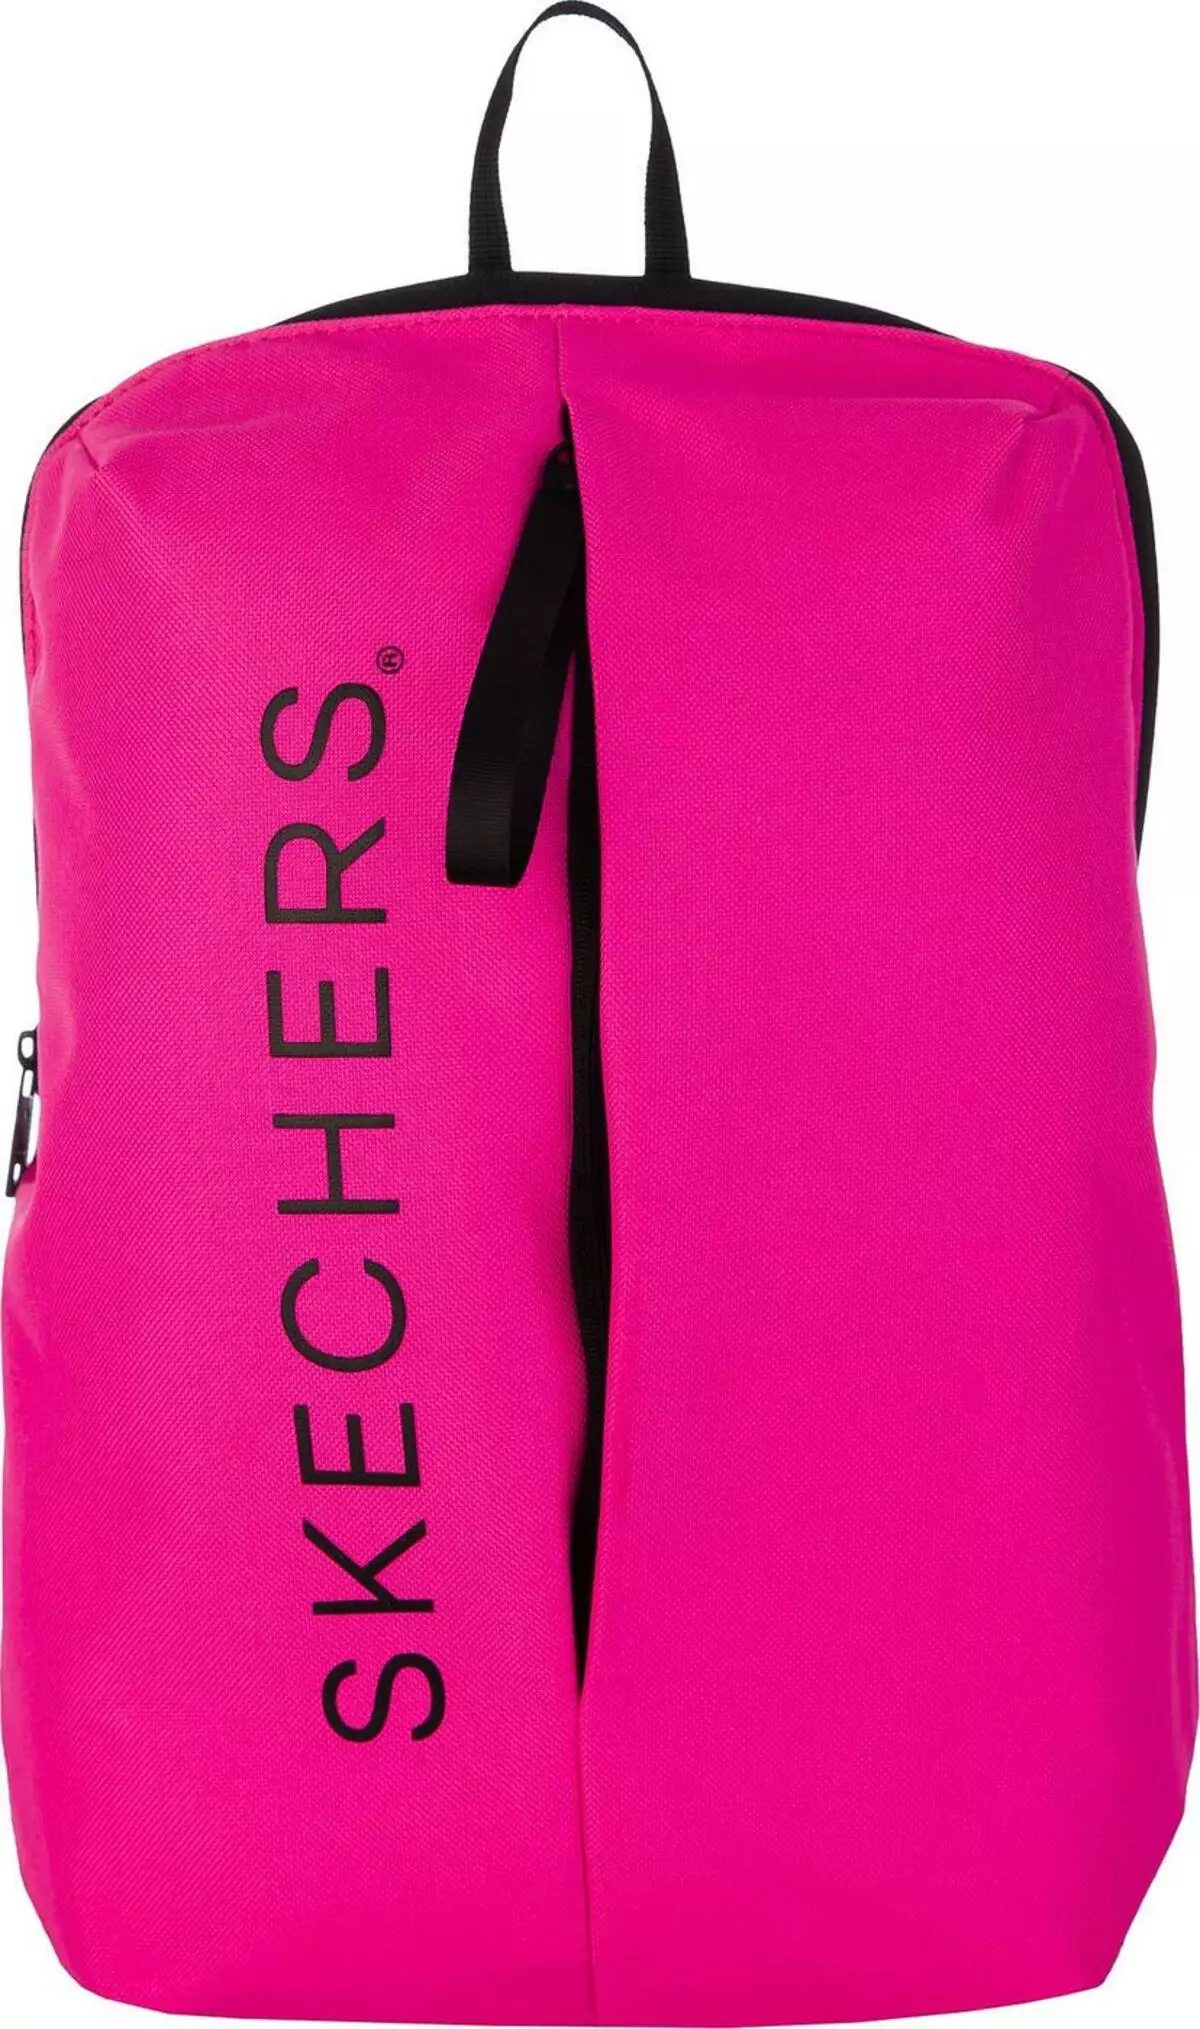 Skechers Backpack: ผู้หญิงสีดำและสีเขียวสีเทาและสีแดงสีน้ำเงินน้อยและรุ่นอื่น ๆ ความคิดเห็น 15455_23